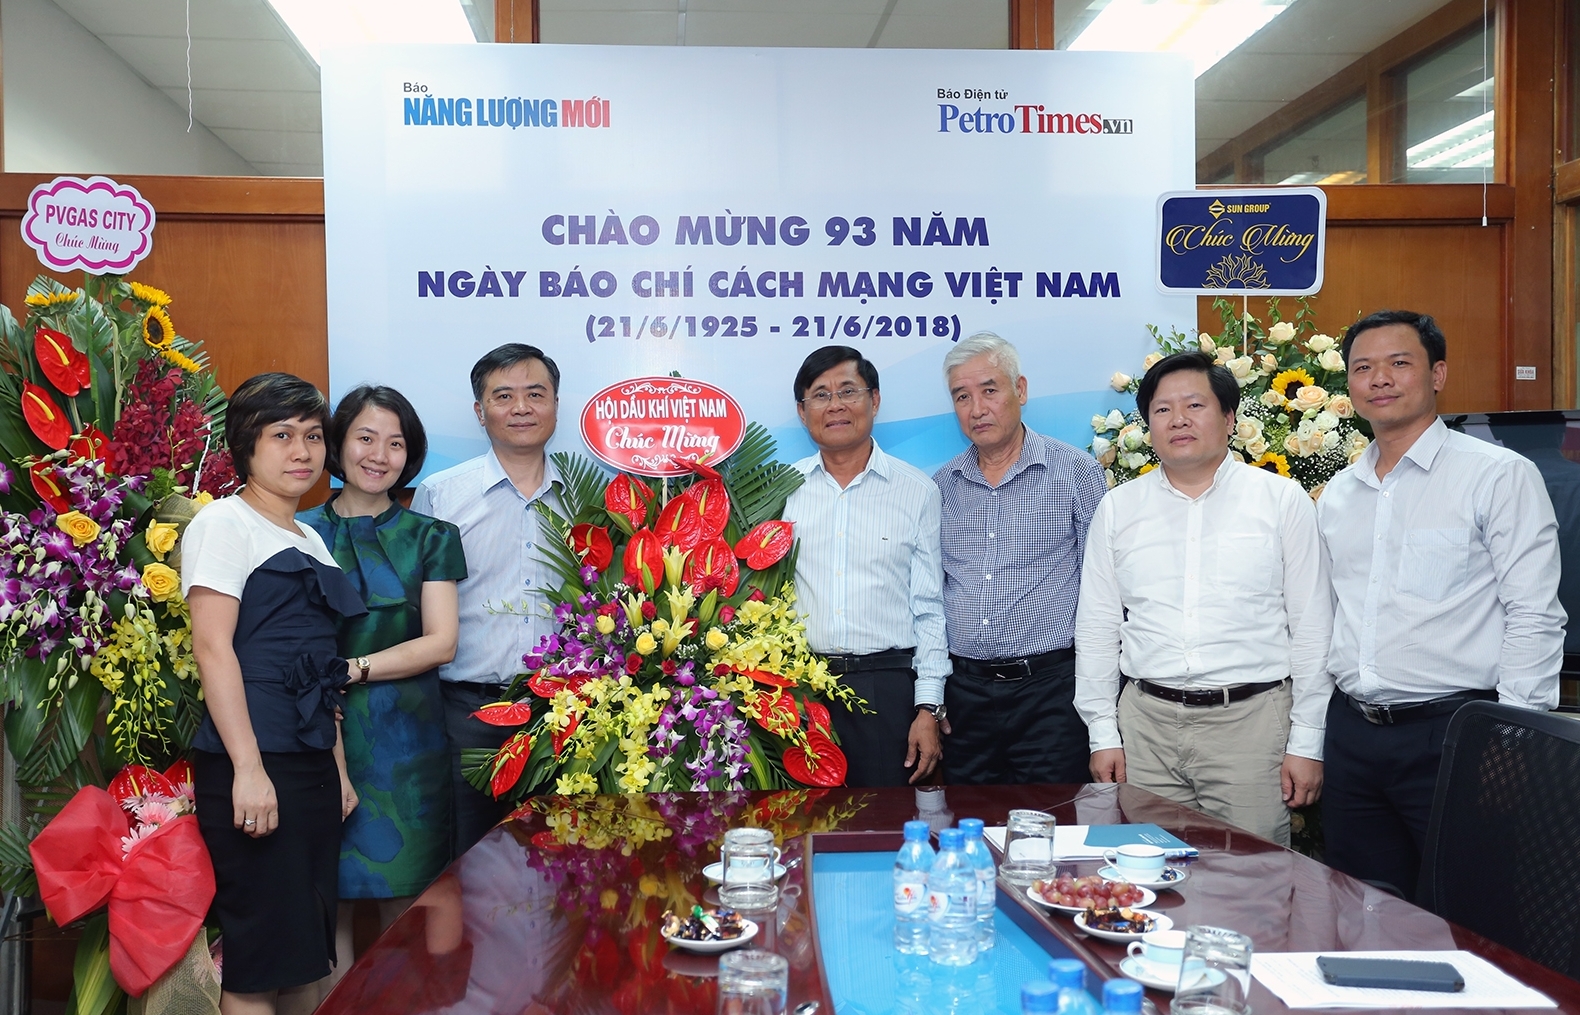 Hội Dầu khí Việt Nam chúc mừng Báo Năng lượng Mới - PetroTimes